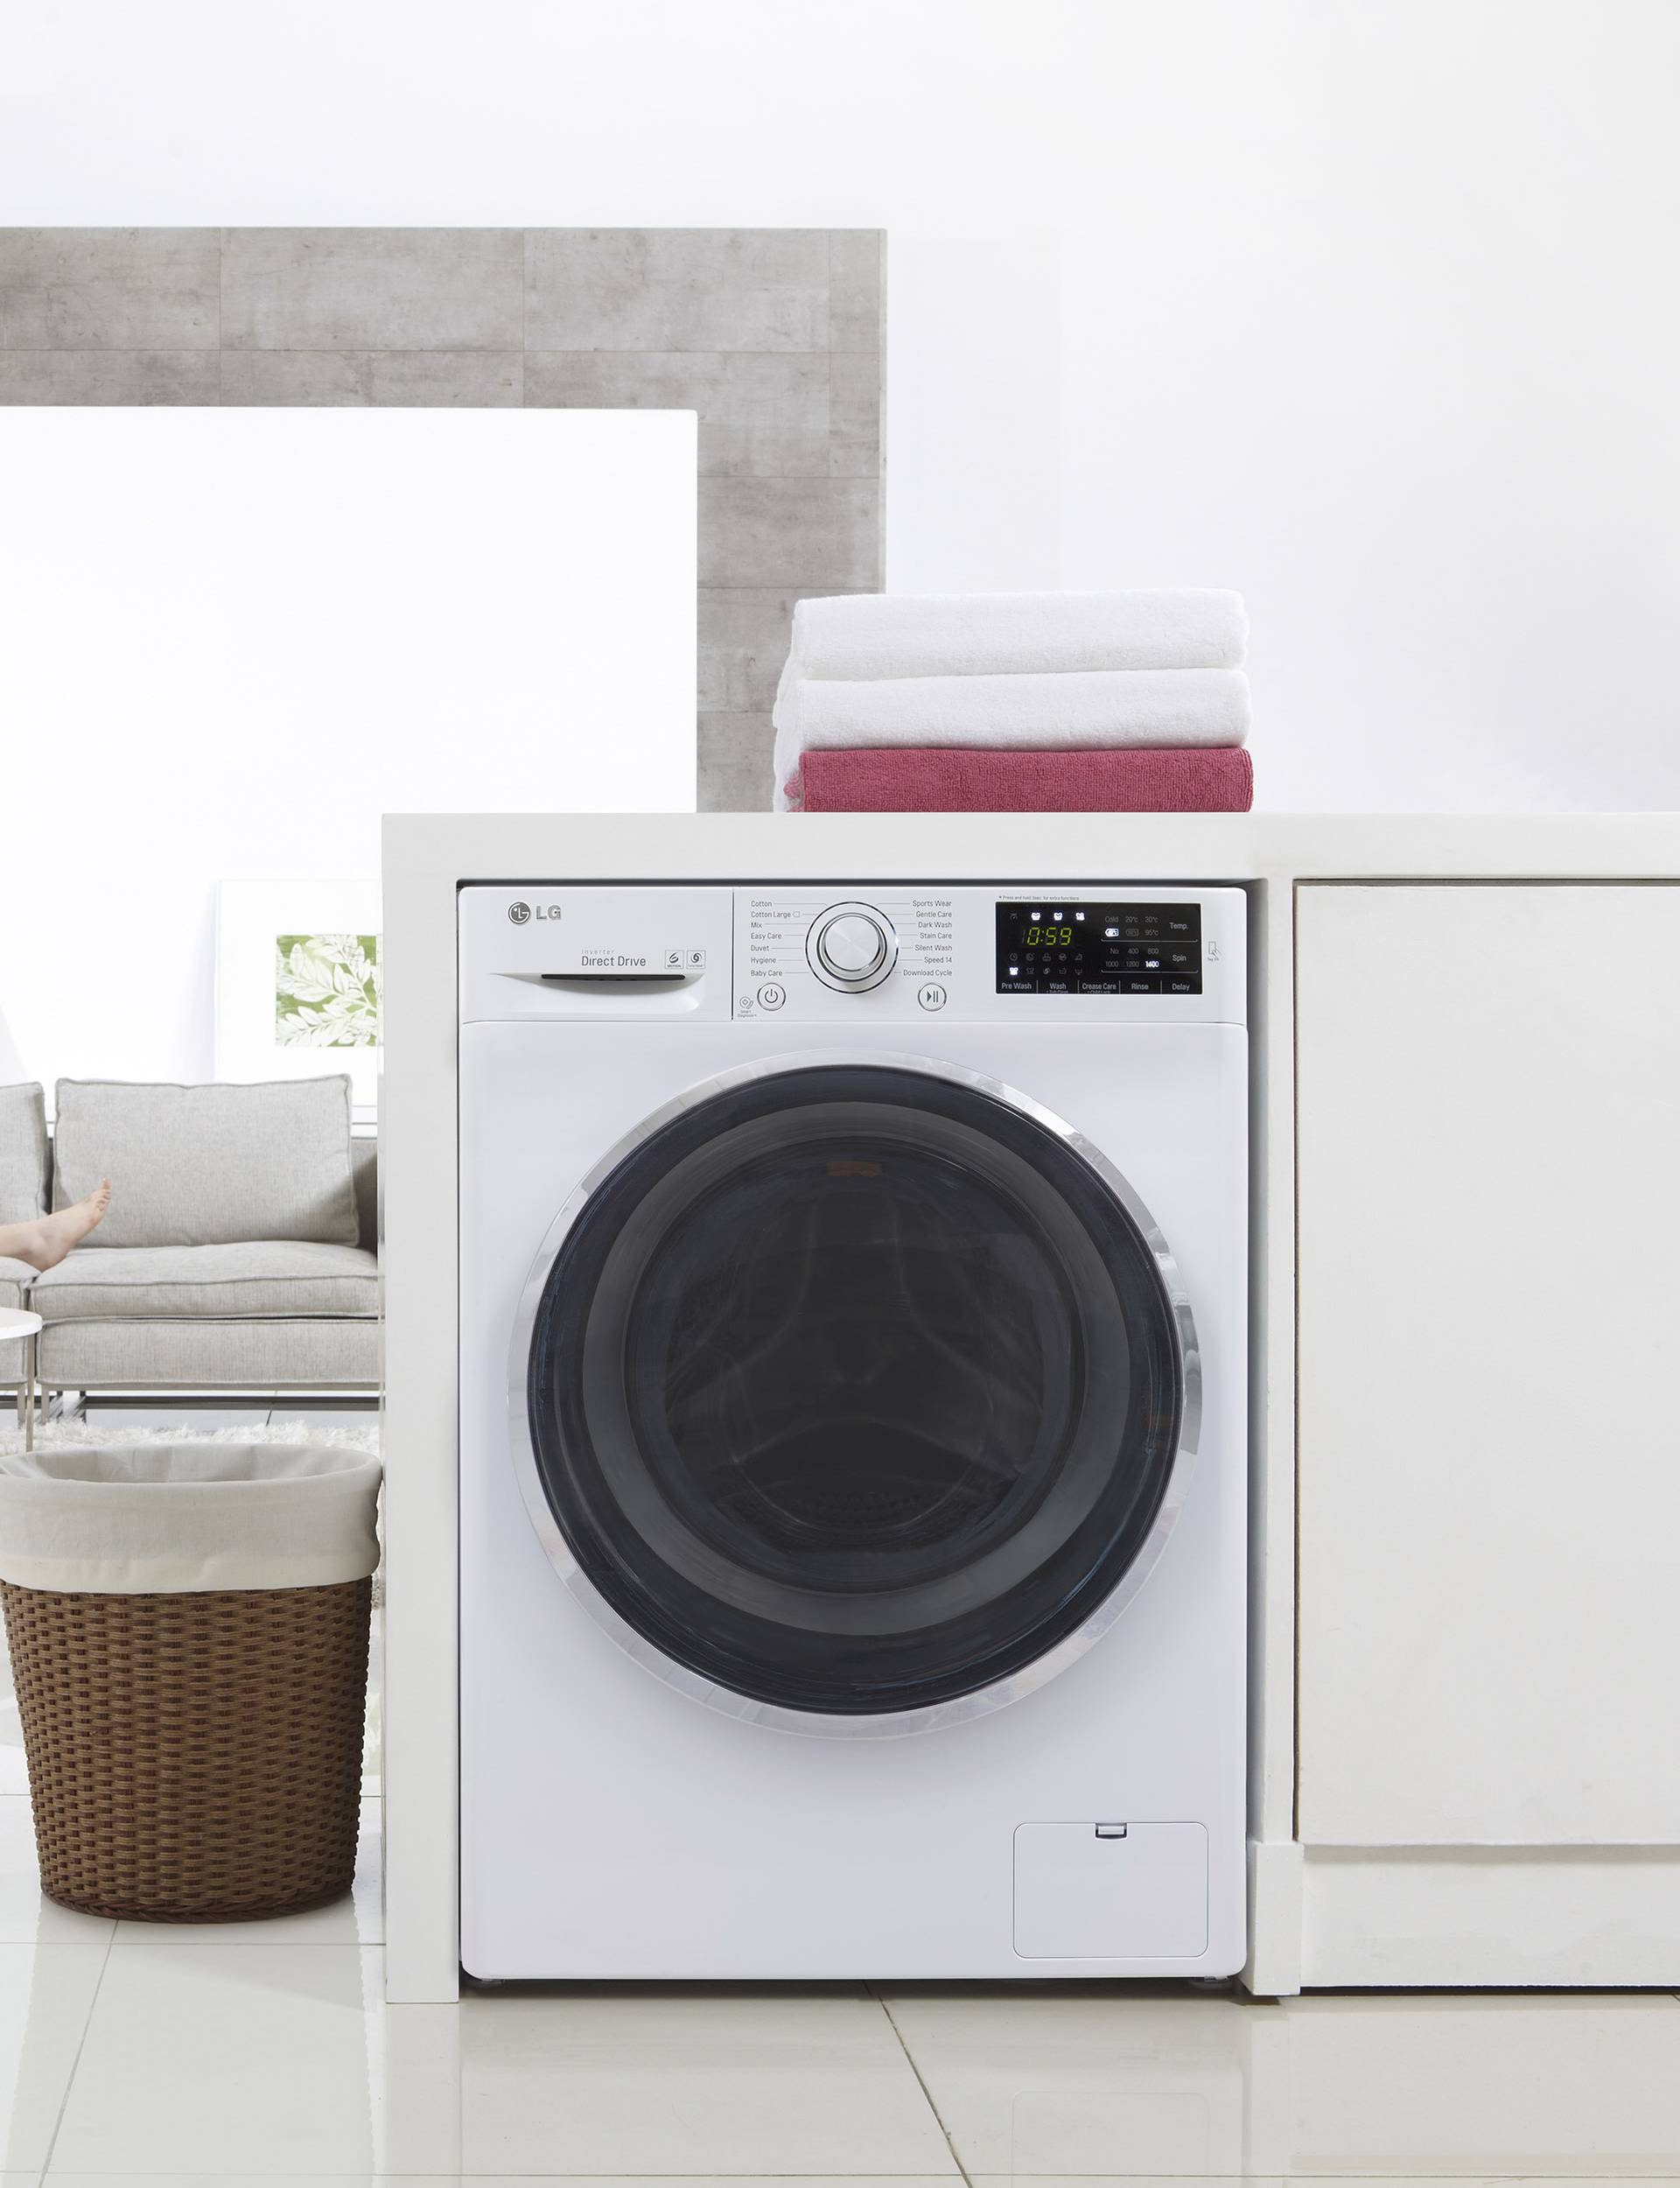 LG-eve TurboWash perilice za brzo pranje i uštedu energije